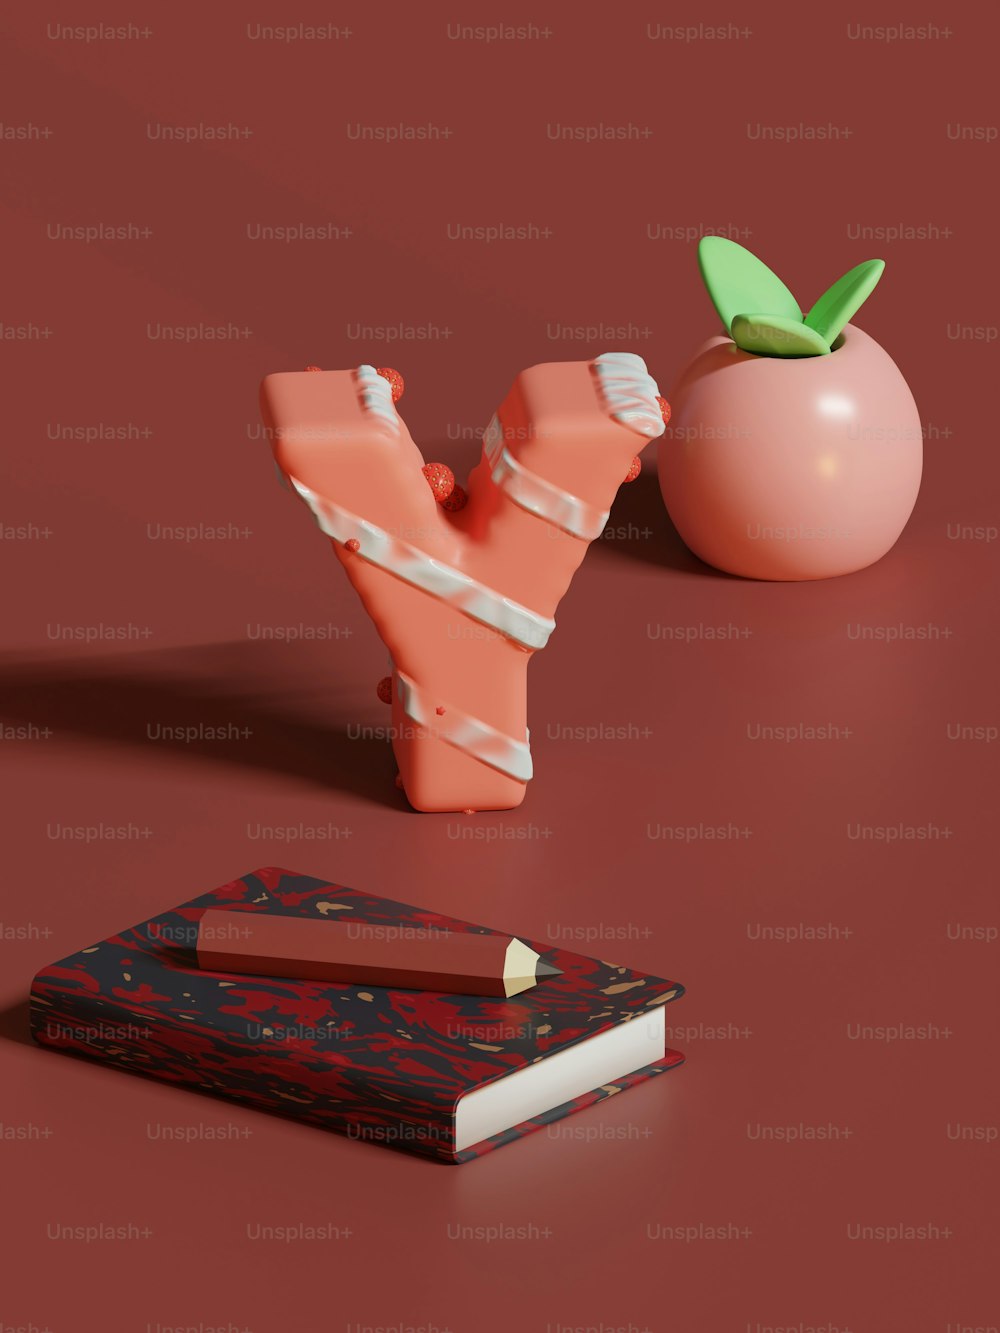 Un morceau de papier à côté d’une pomme et d’un livre